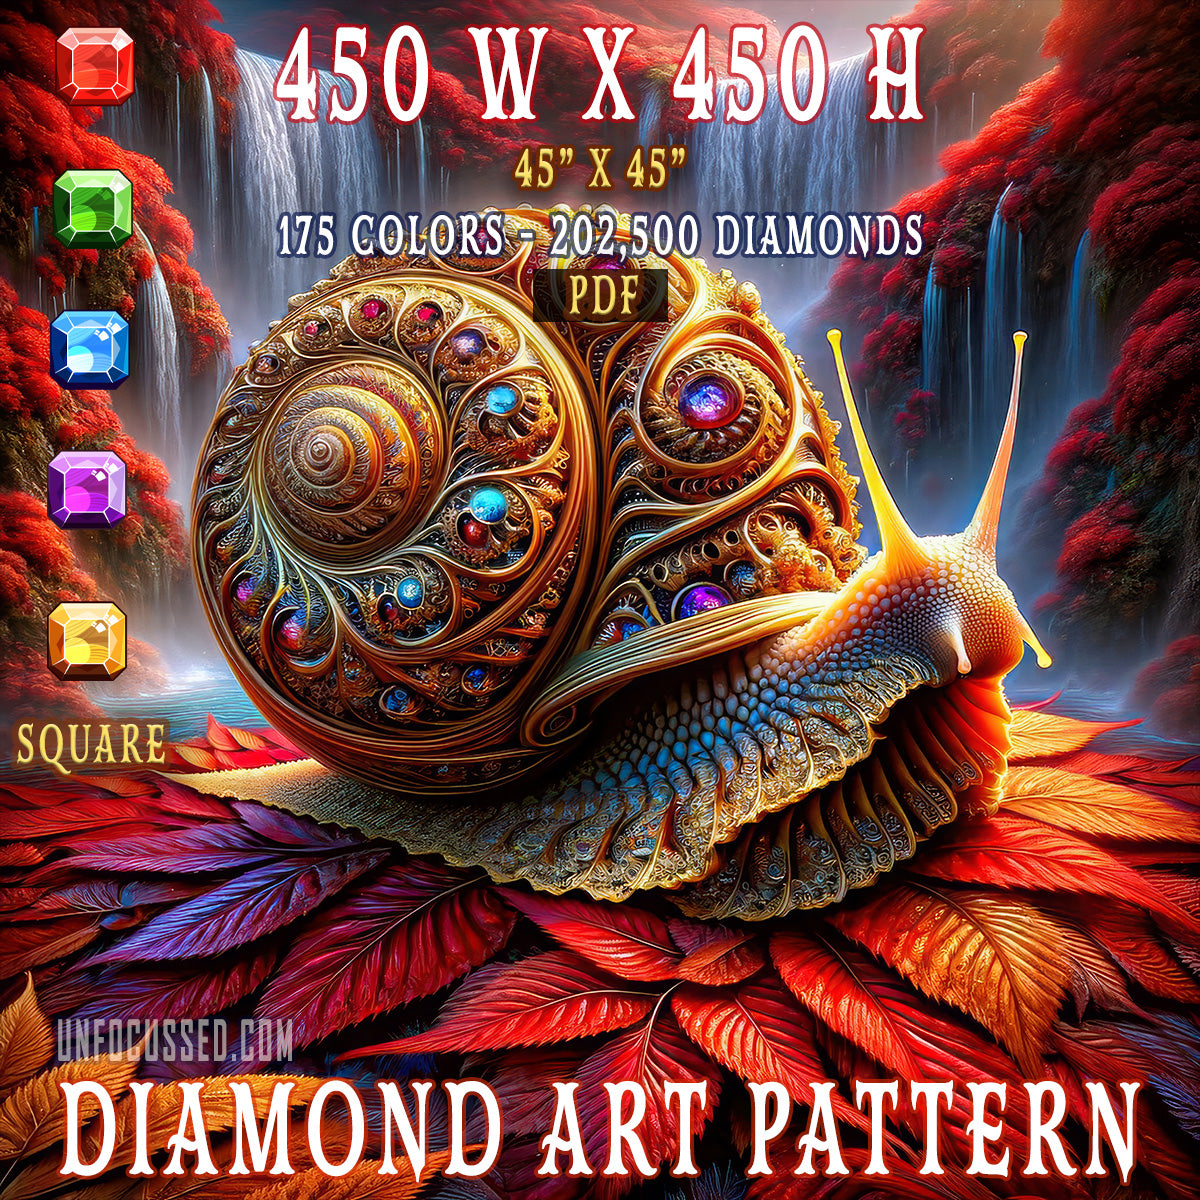 El patrón de arte de diamante Regal Acanthus Rooster